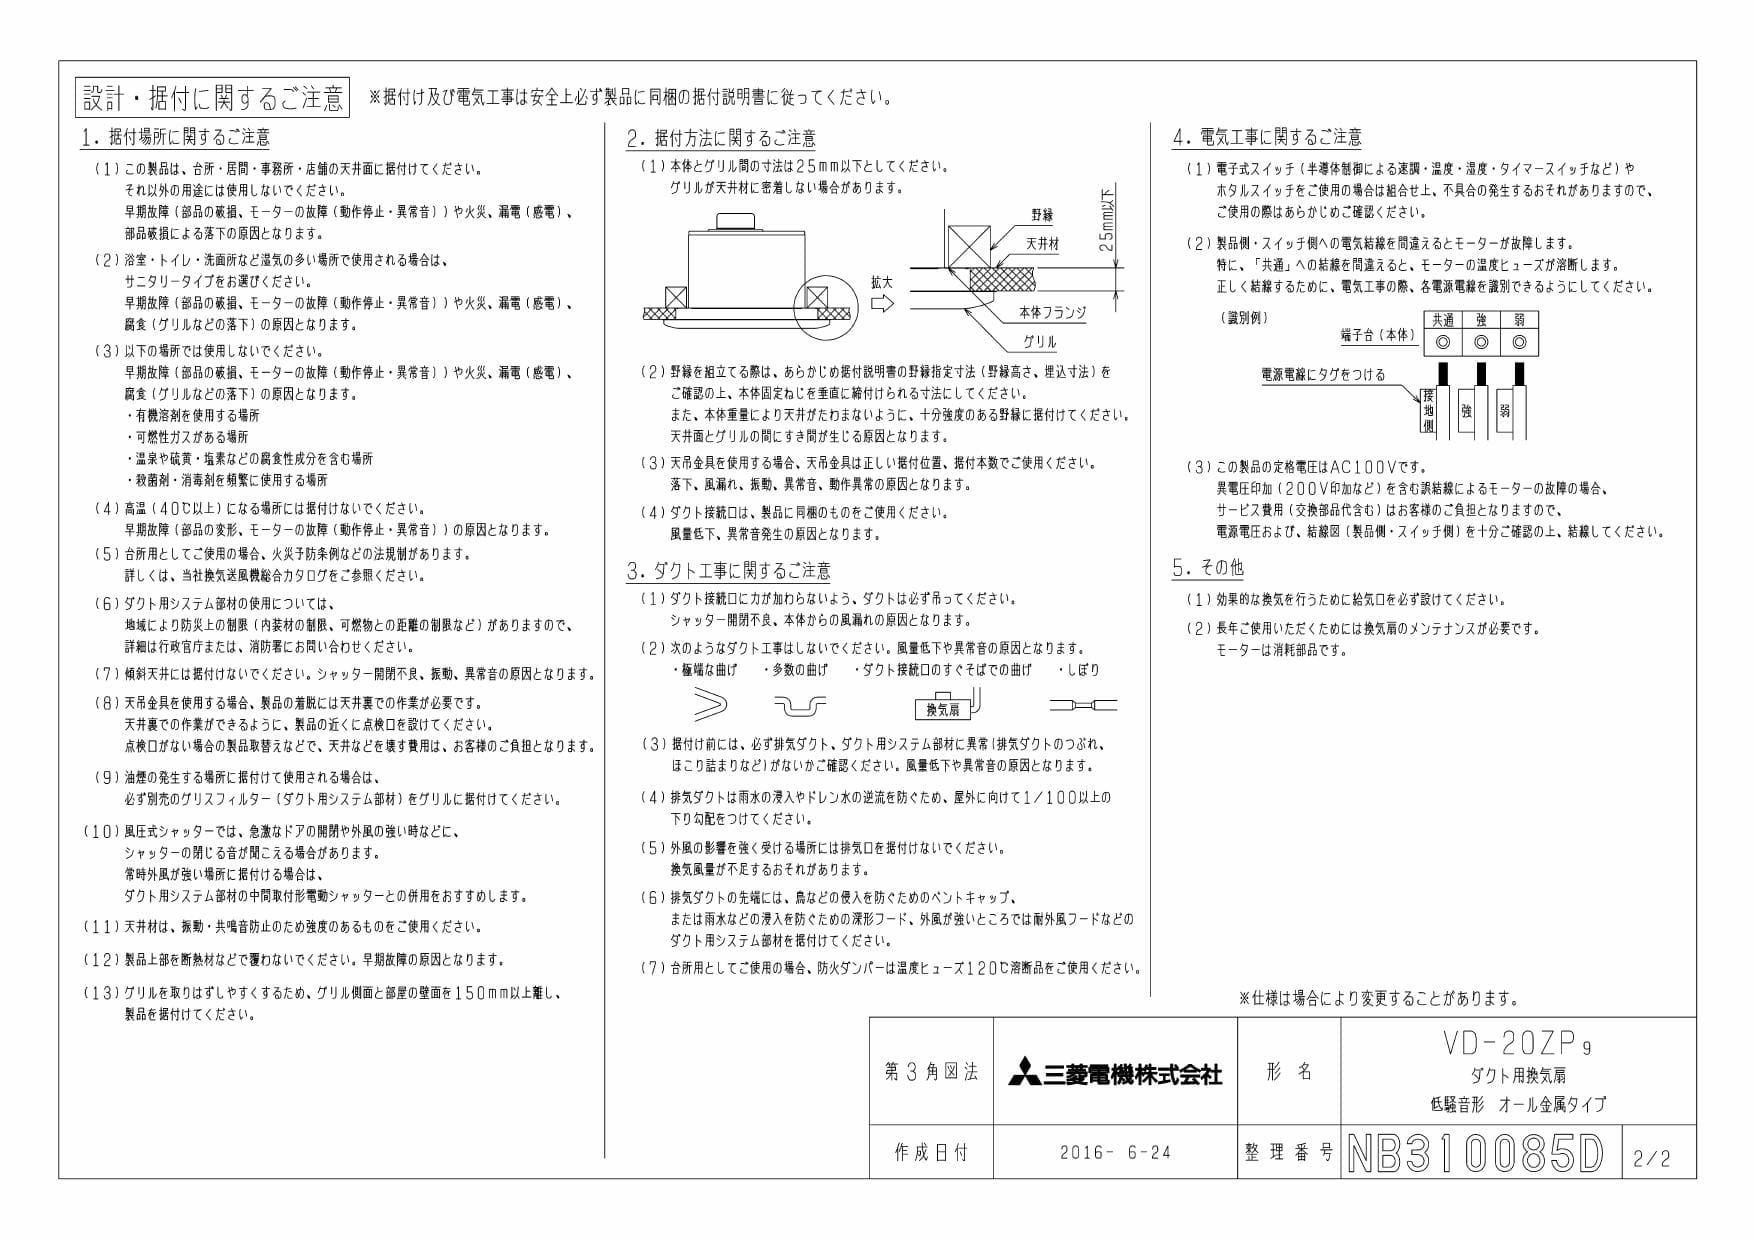 三菱電機 VD-20ZP9商品図面 | 通販 プロストア ダイレクト